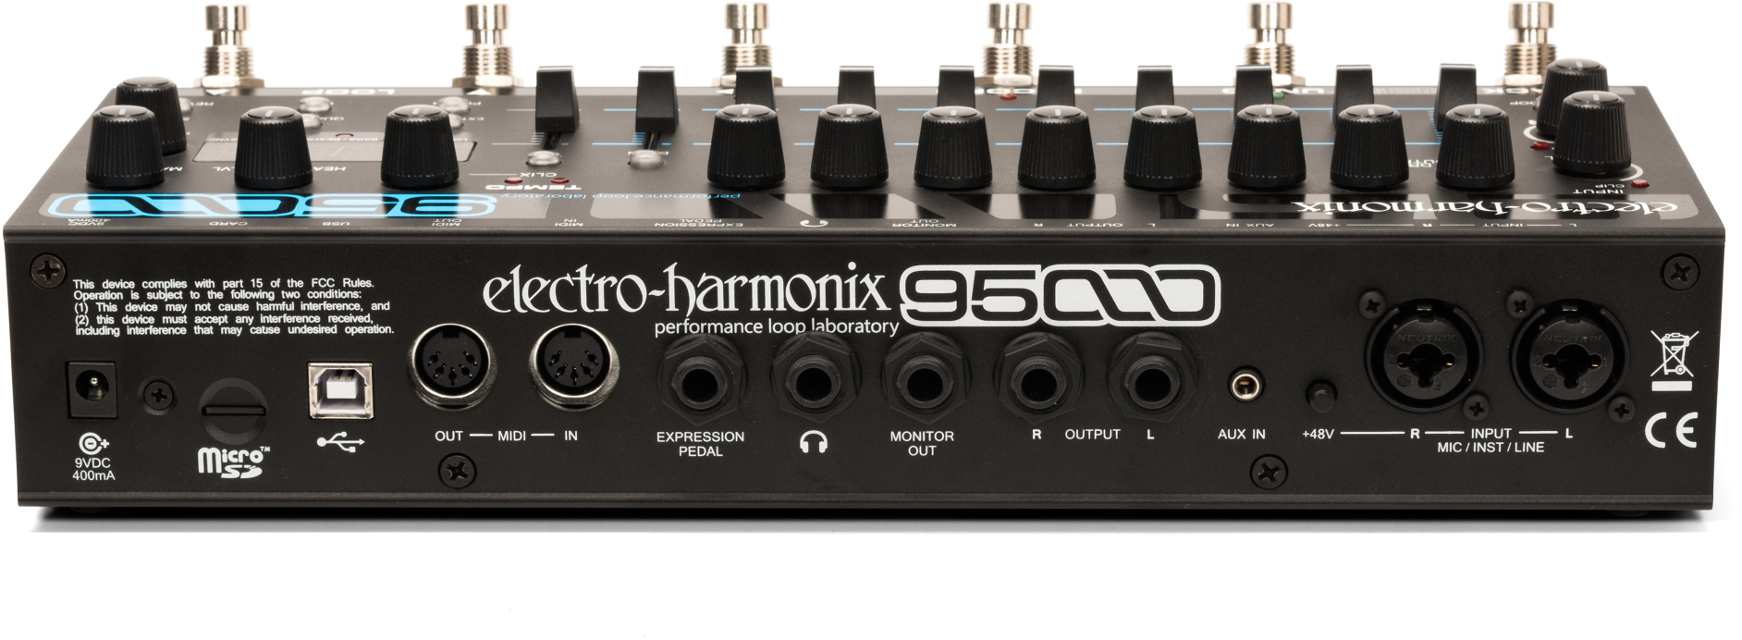 43188円 卓出 Electro Harmonix 95000 Performance Loop Laboratory